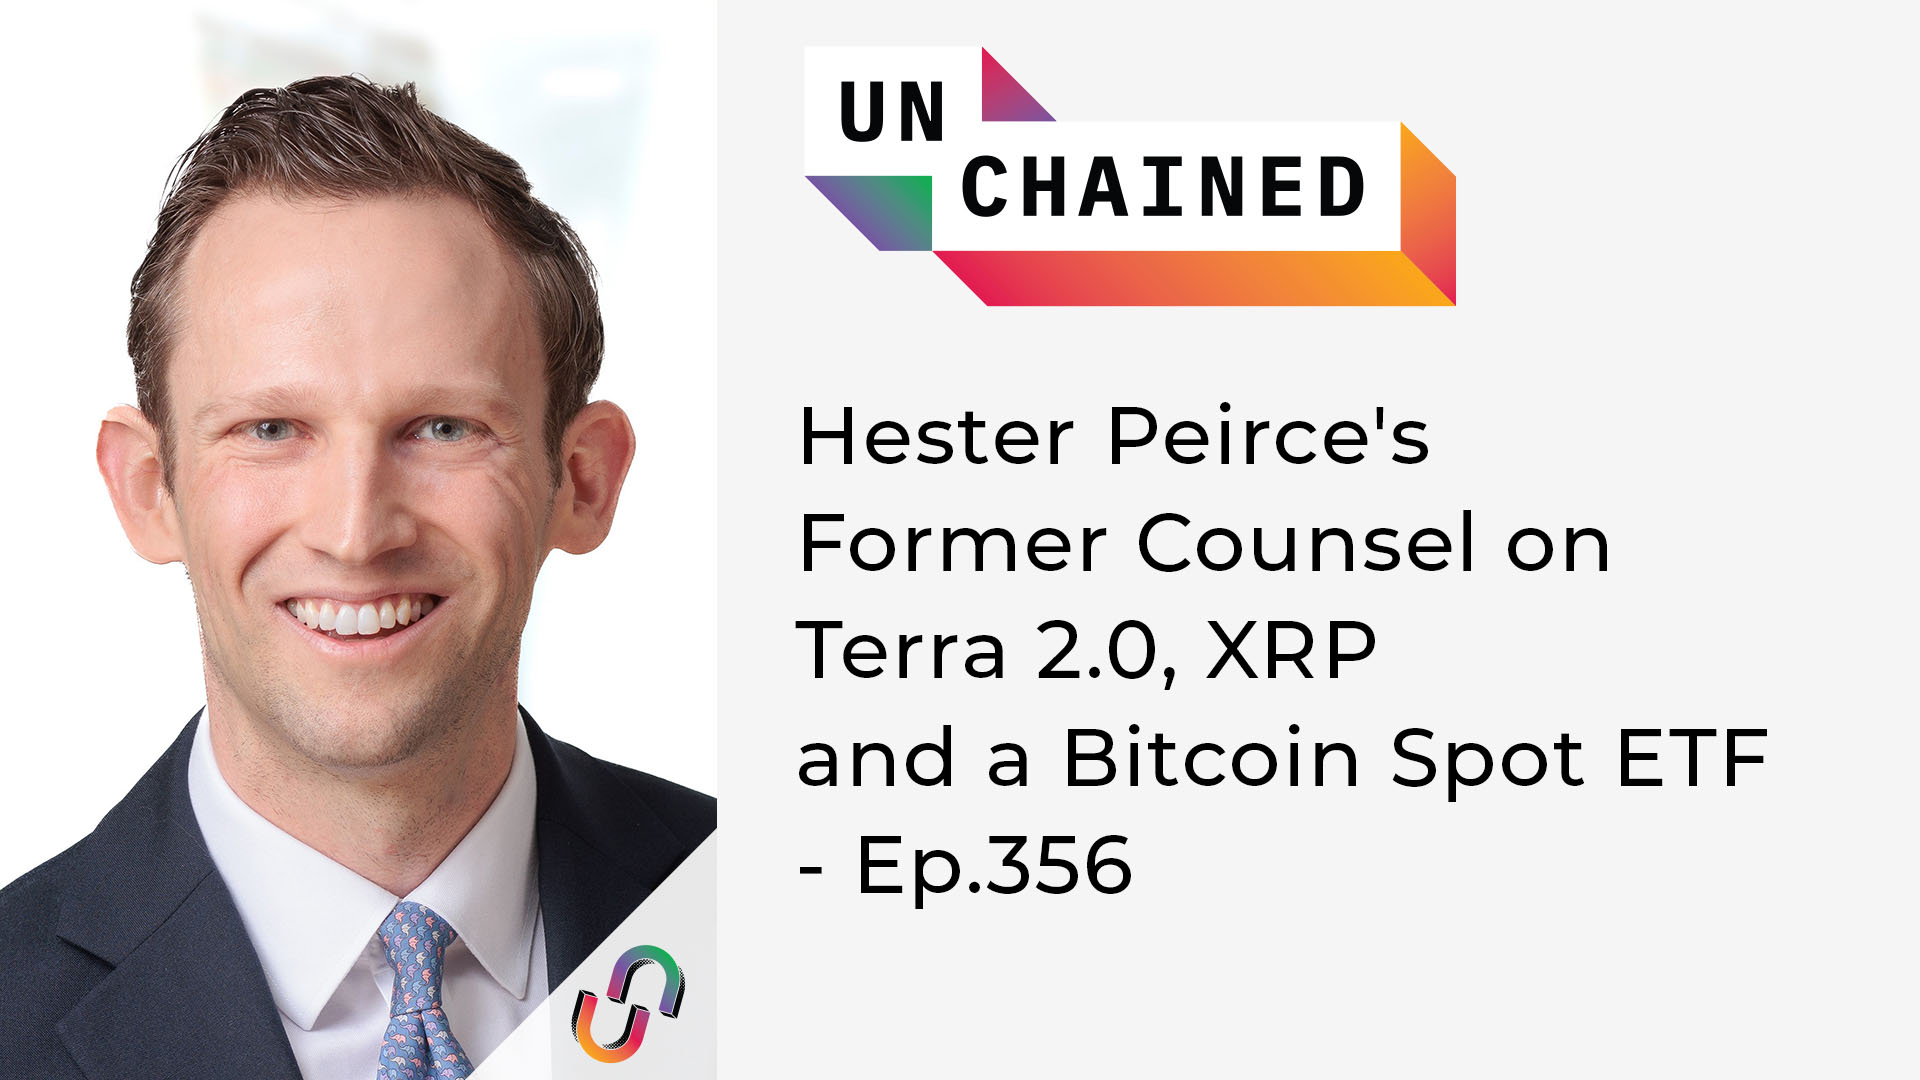 Unchained - Tập.356 - Cựu cố vấn của Hester Peirce về Terra 2.0, XRP và ETF Bitcoin Spot